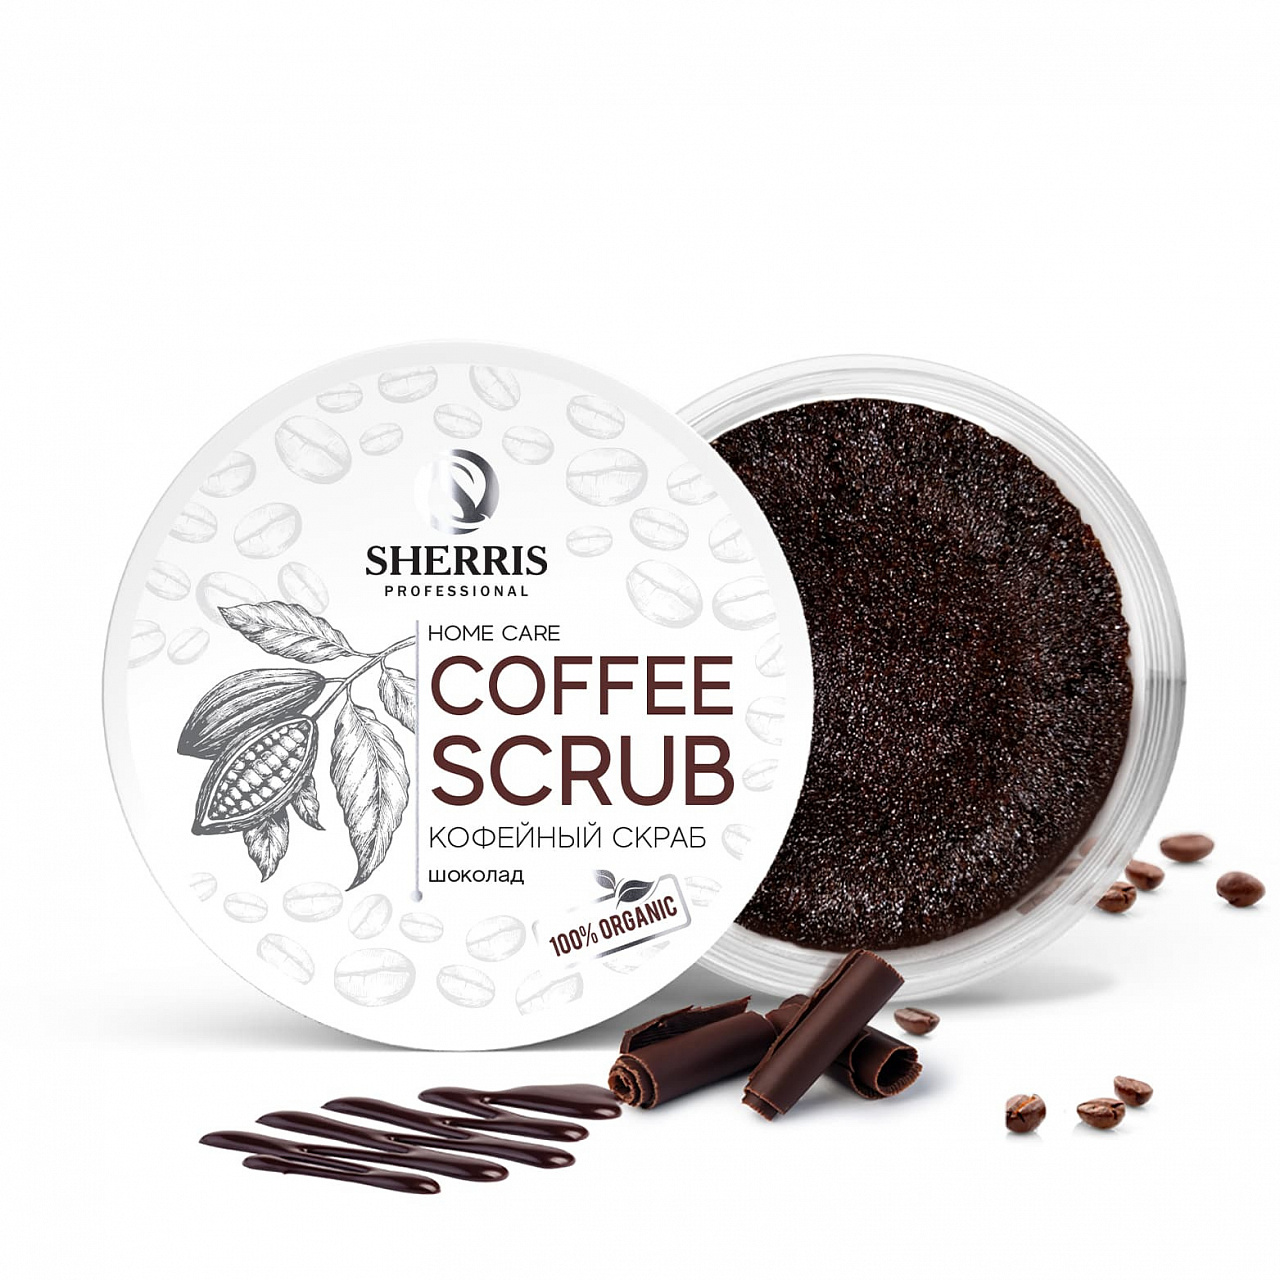 Кофейный скраб для тела SHERRIS шоколад, 200 гр kopusha скраб кубики для тела кофе какао 250